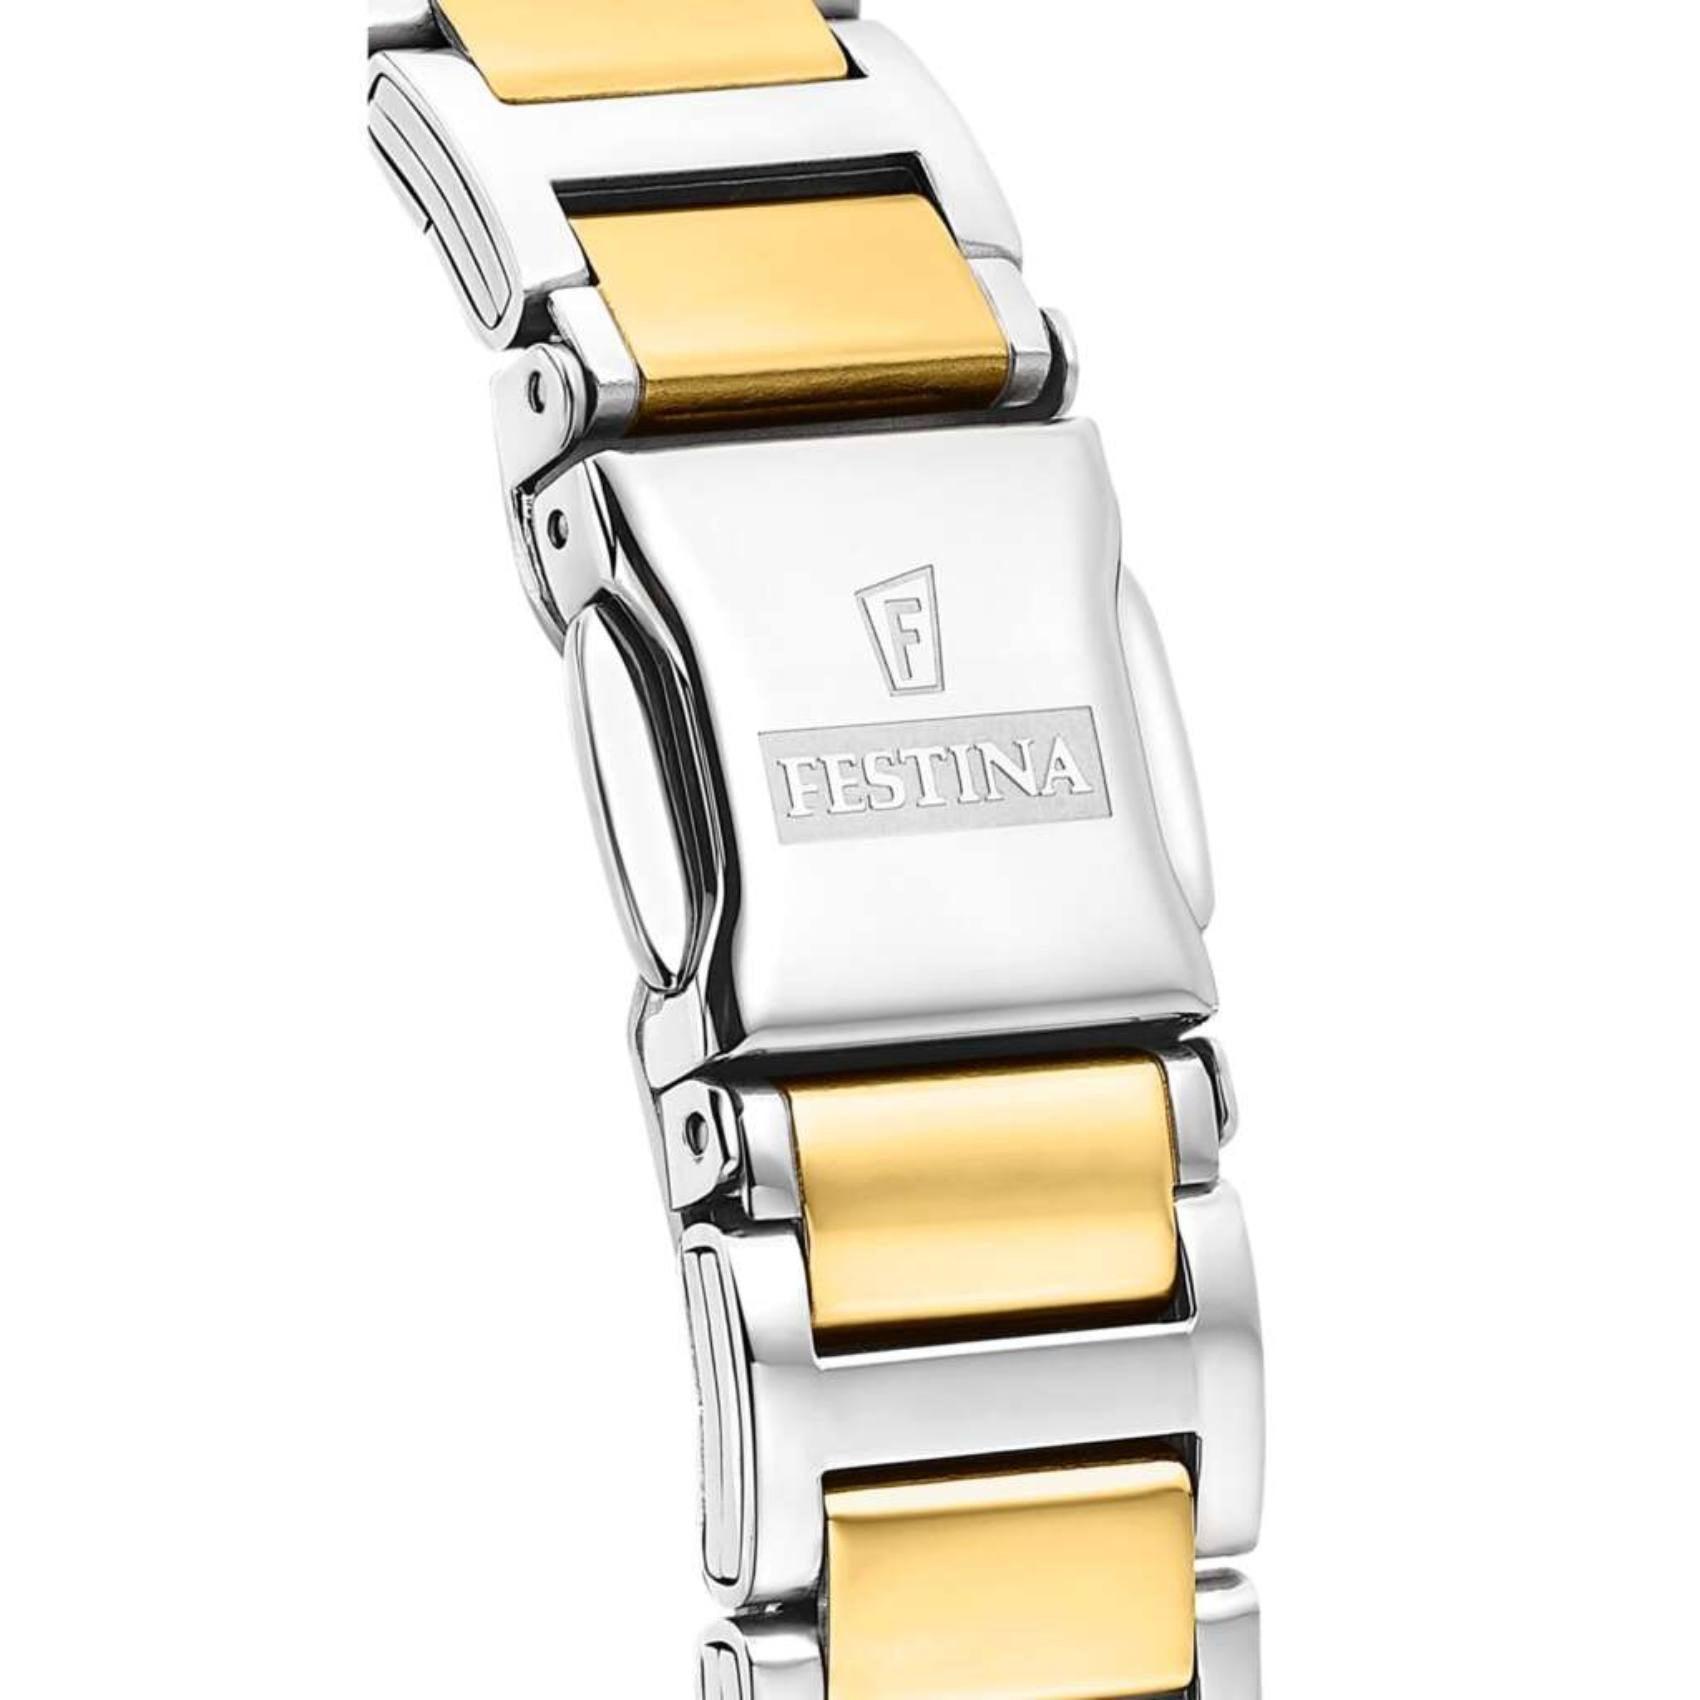 Ρολόι Festina F16937/B με ασημί-χρυσό ατσάλινο μπρασελέ, χρυσό καντραν, μηχανισμό μπαταρίας, στρογγυλό στεφάνι με διάμετρο 32mm αδιάβροχο στις 5ΑΤΜ-50Μ.